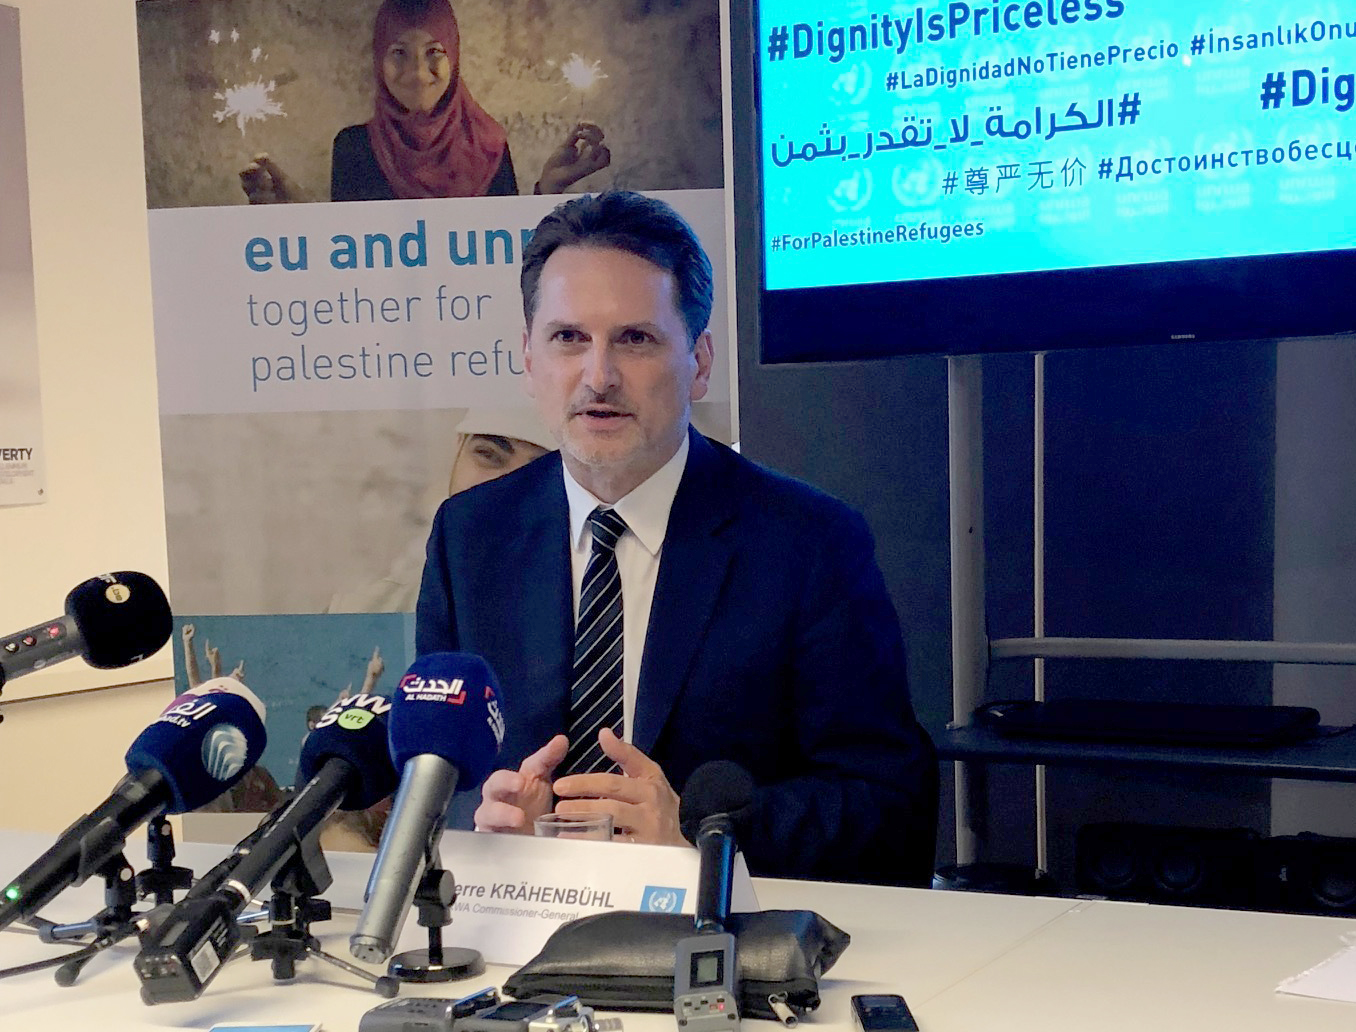 المفوض العام لوكالة الأمم المتحدة لغوث وتشغيل اللاجئين الفلسطينيين (أونروا) بيير كرينبول